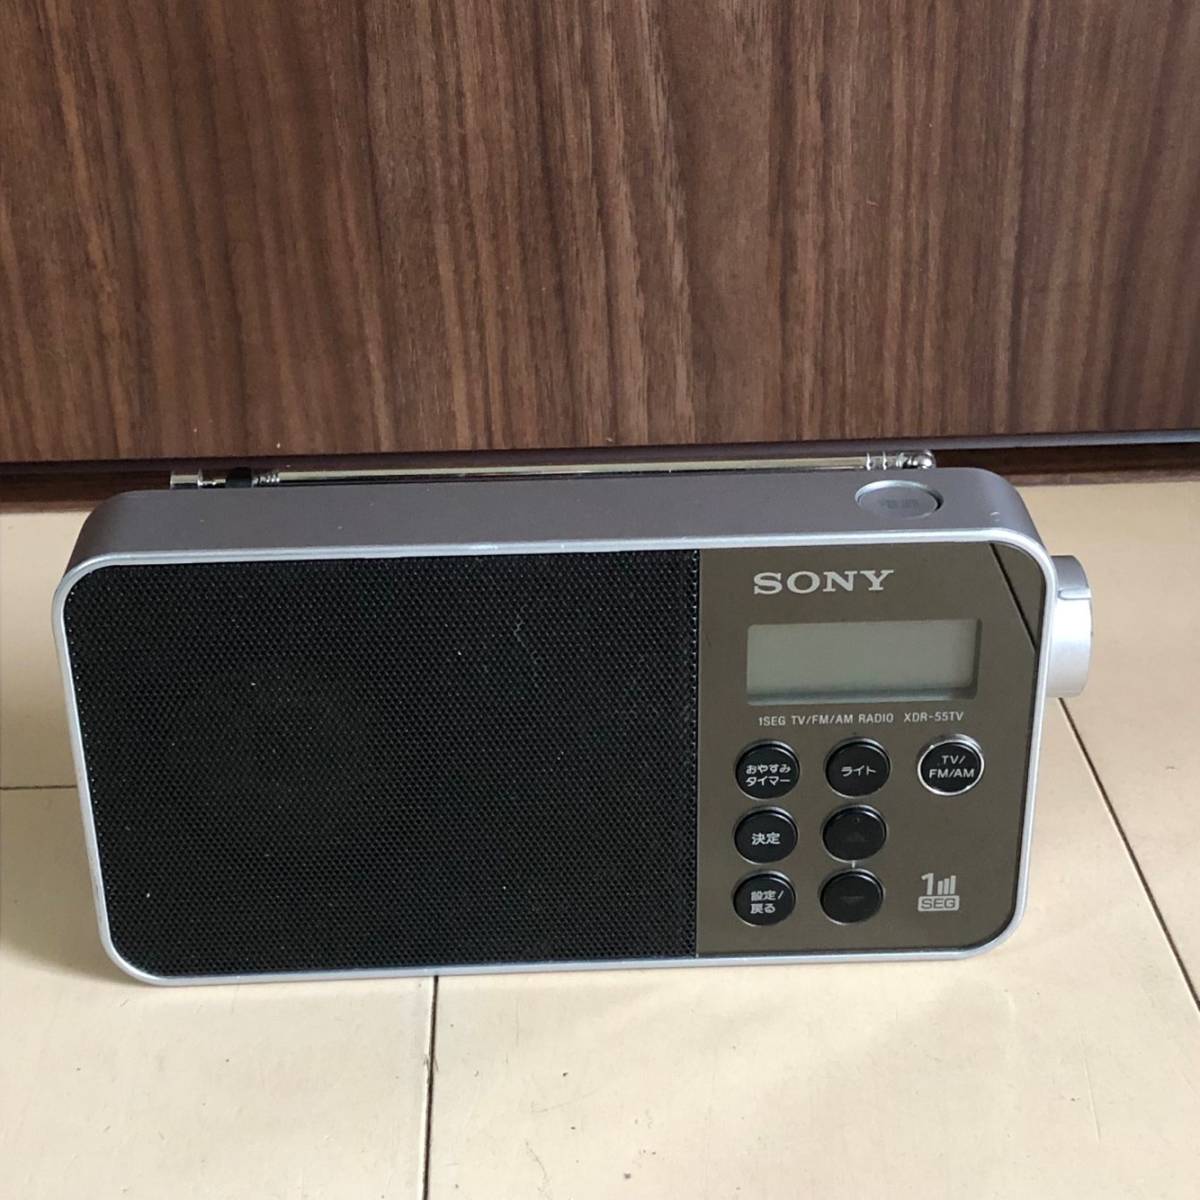 SONY  FM/AM/TV XDR-55TV ラジオ  ACアダプター付きの画像2